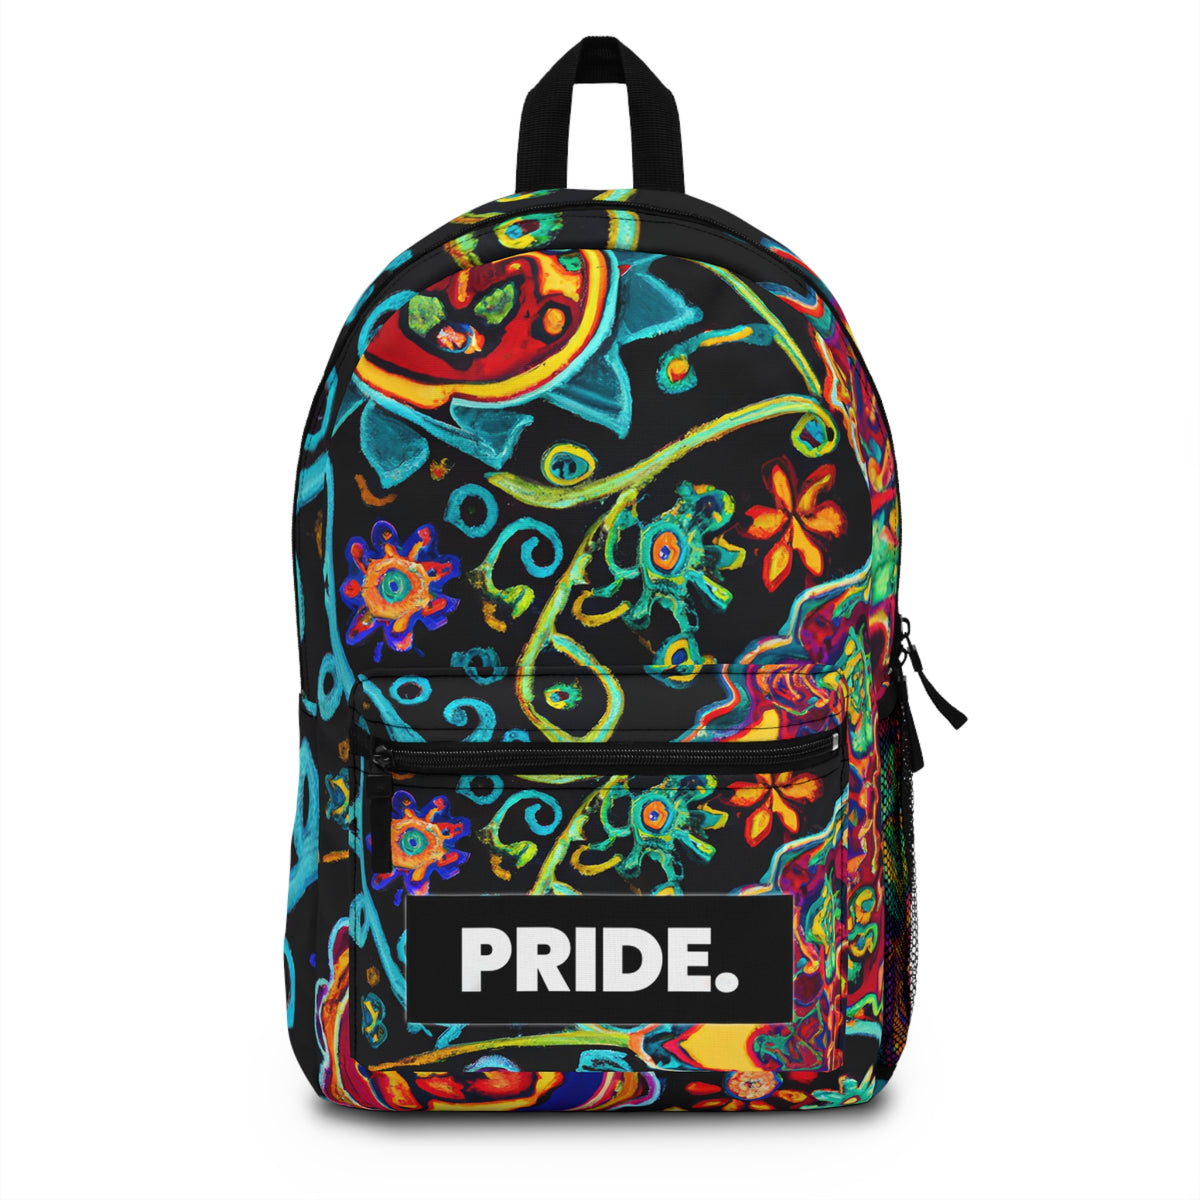 FlambaFlamingo - Gay Pride Backpack